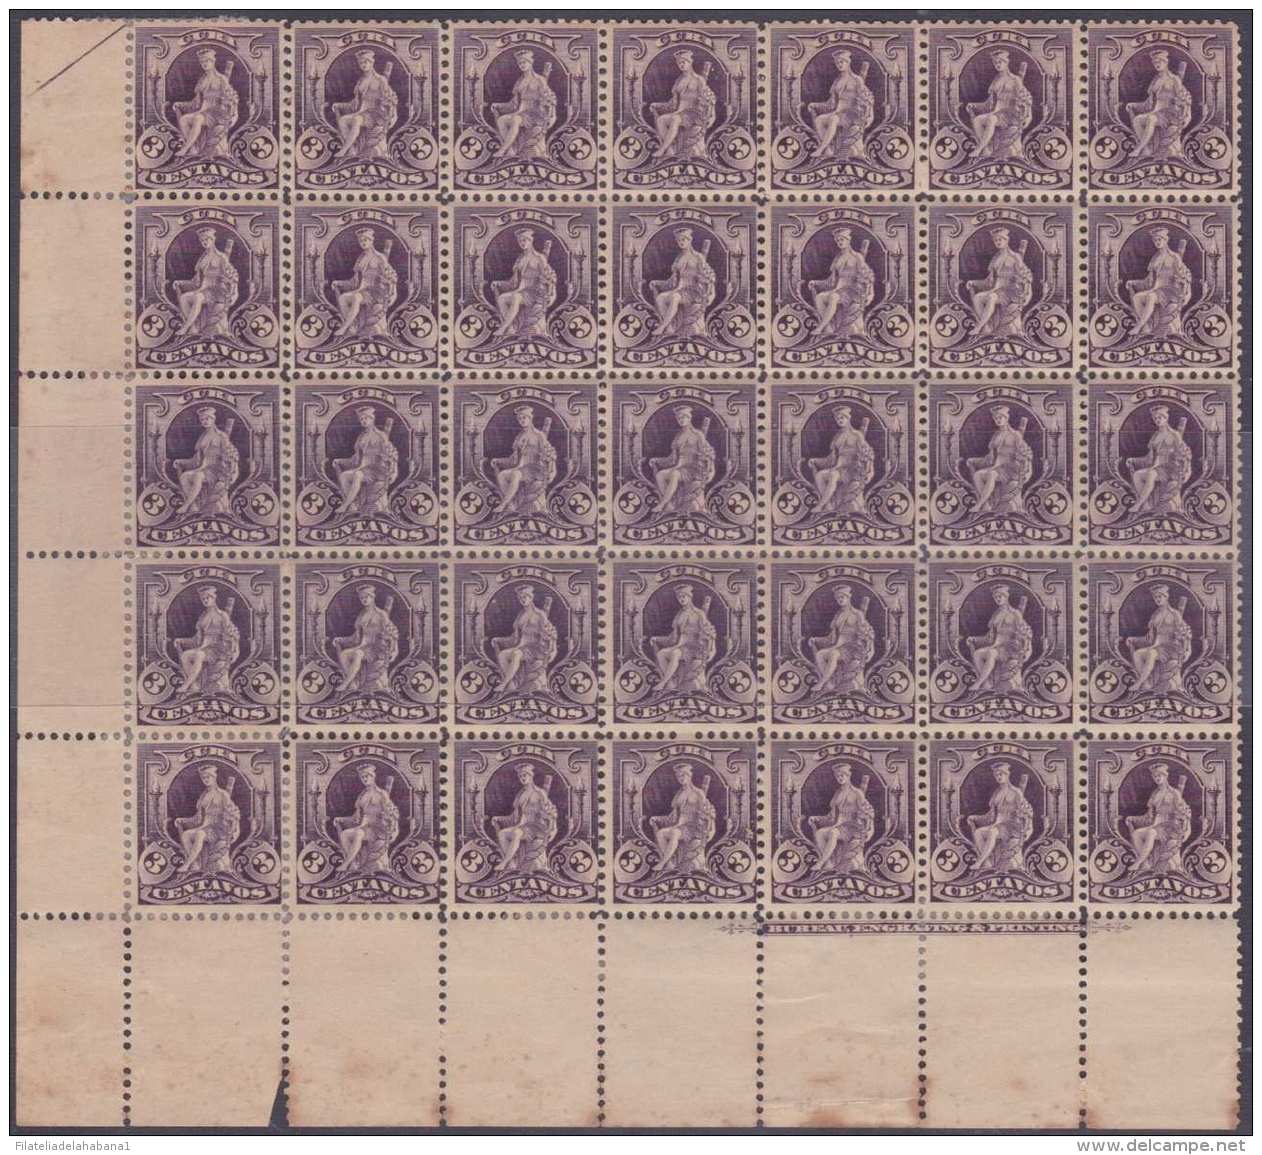 1899-270 CUBA US OCCUPATION (LG-803) 1899 3c INDIA FOUNT. BLOCK OF 35. PLATE NUMBER. ORIGINAL GUM. - Unused Stamps